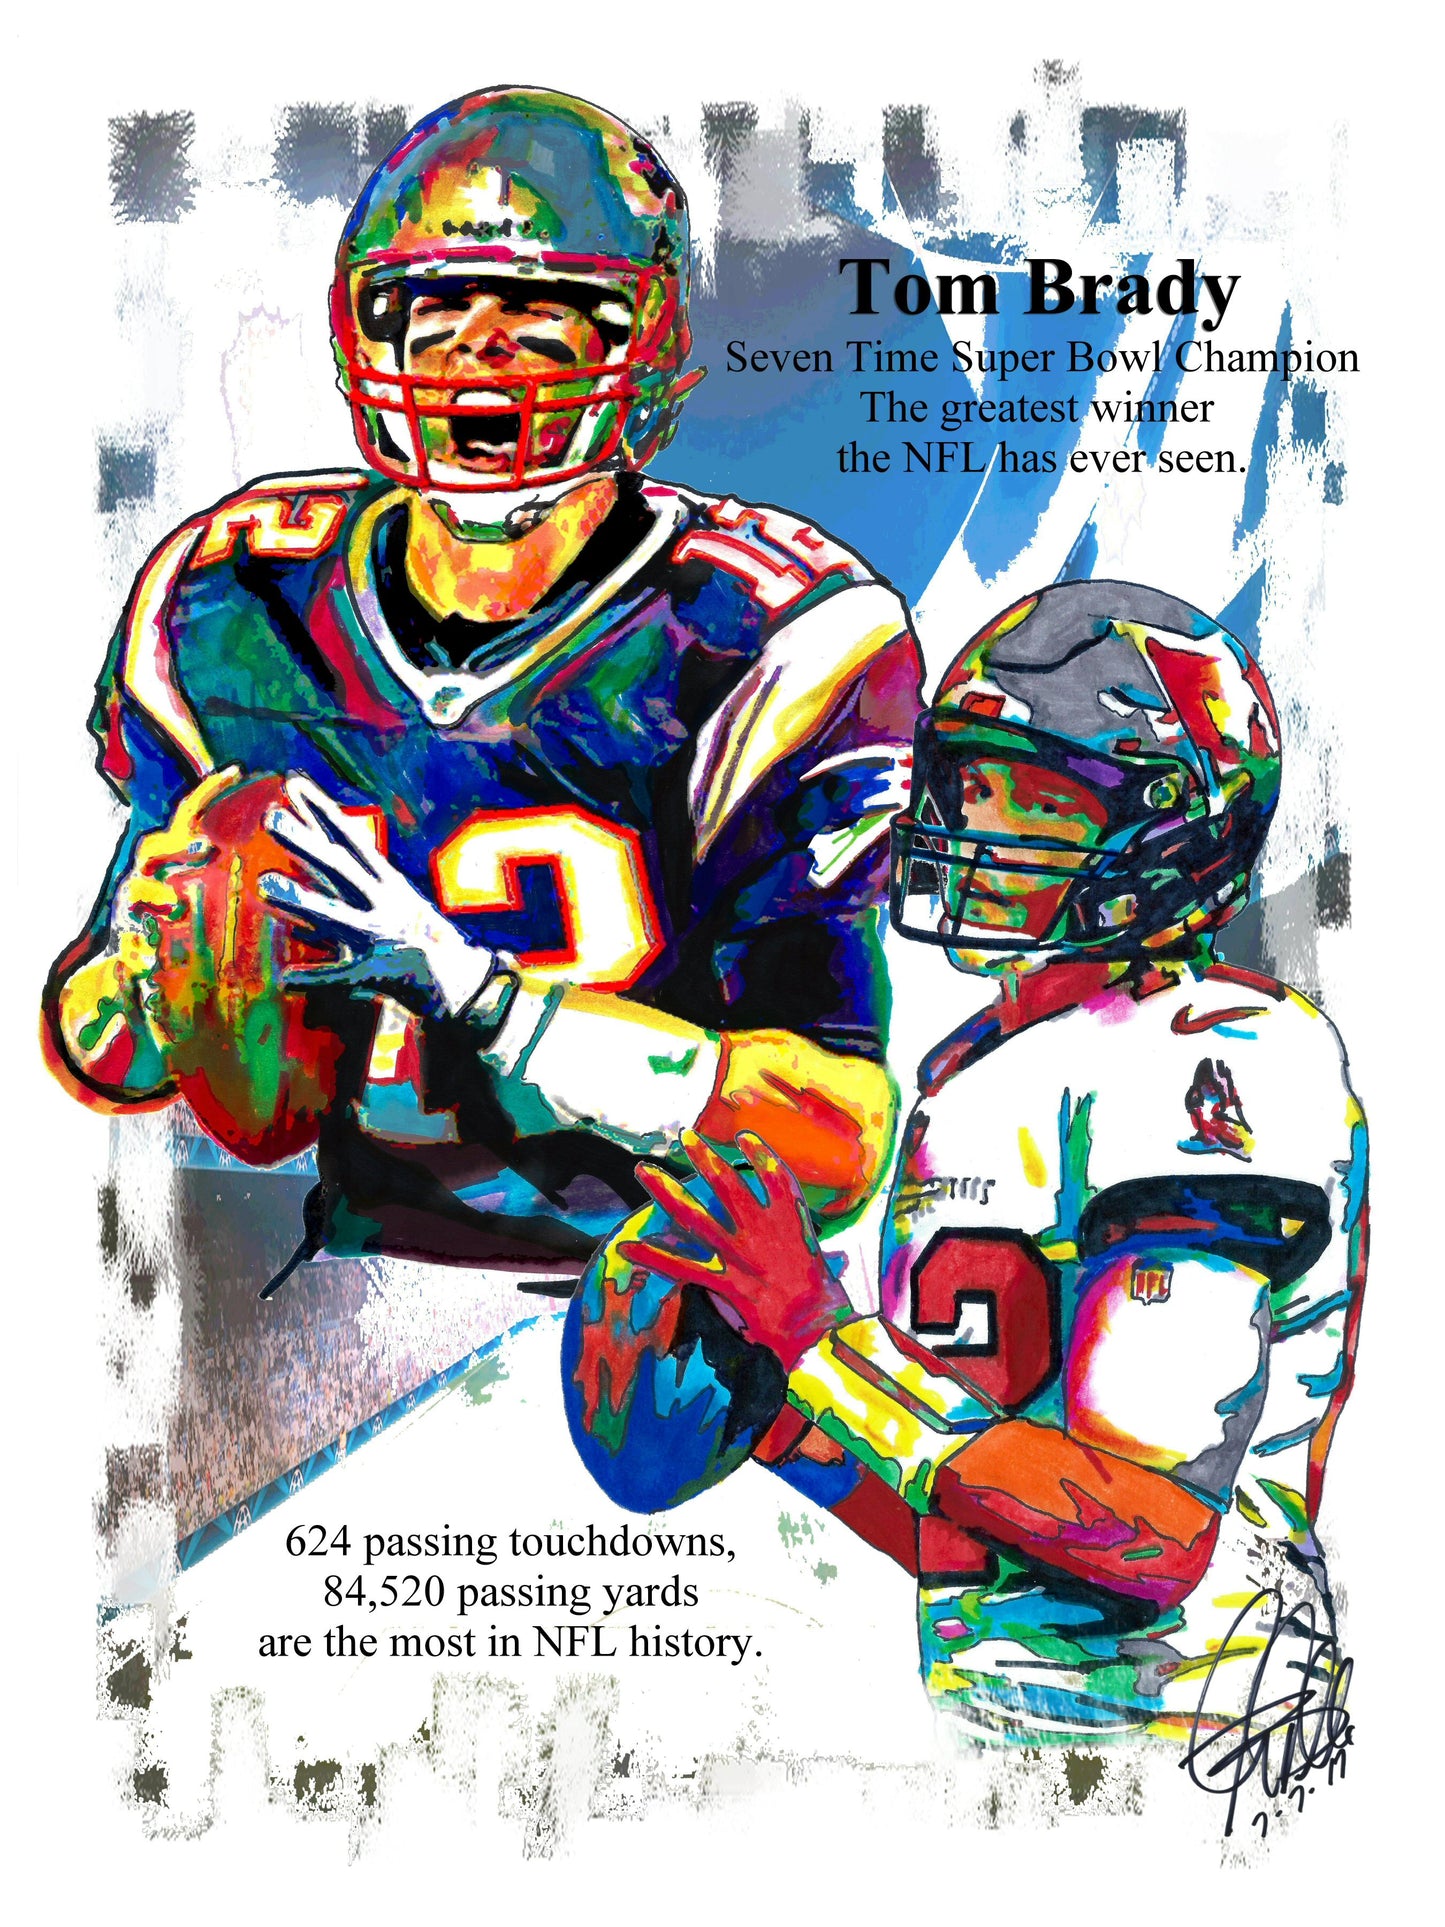 Tom Brady Buccaneers Patriots QB Football Poster Print Wall Art 8.5x11